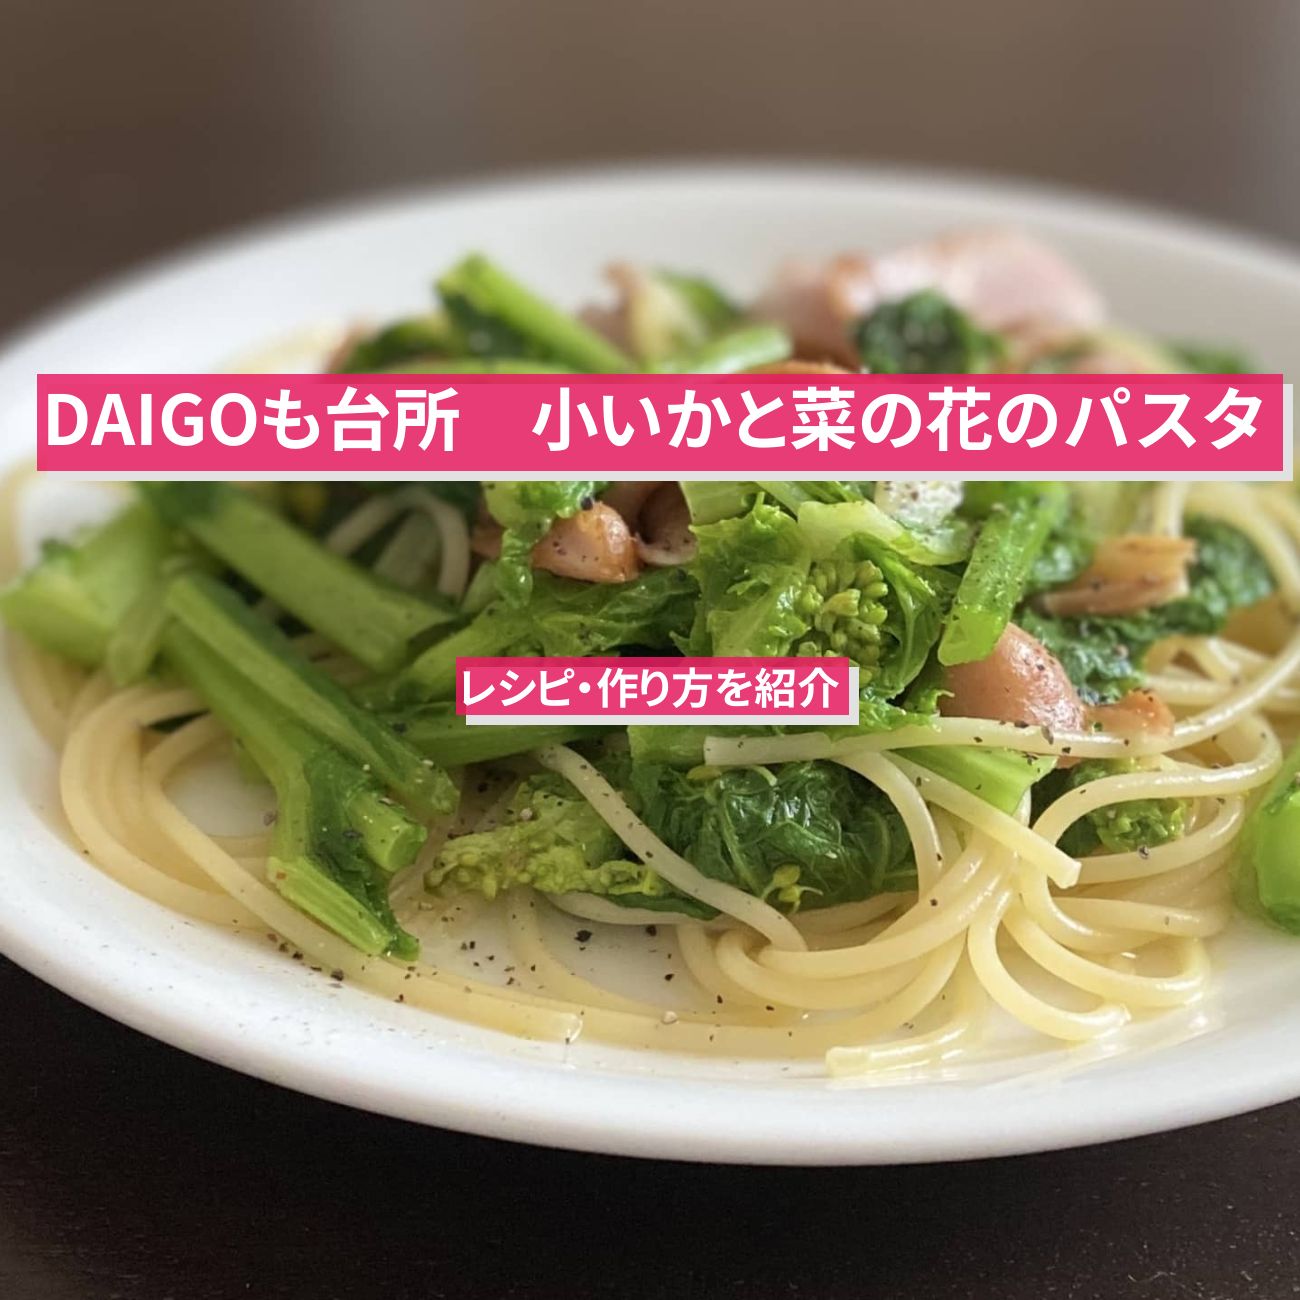 【DAIGOも台所】『小いかと菜の花のパスタ』のレシピ・作り方を紹介